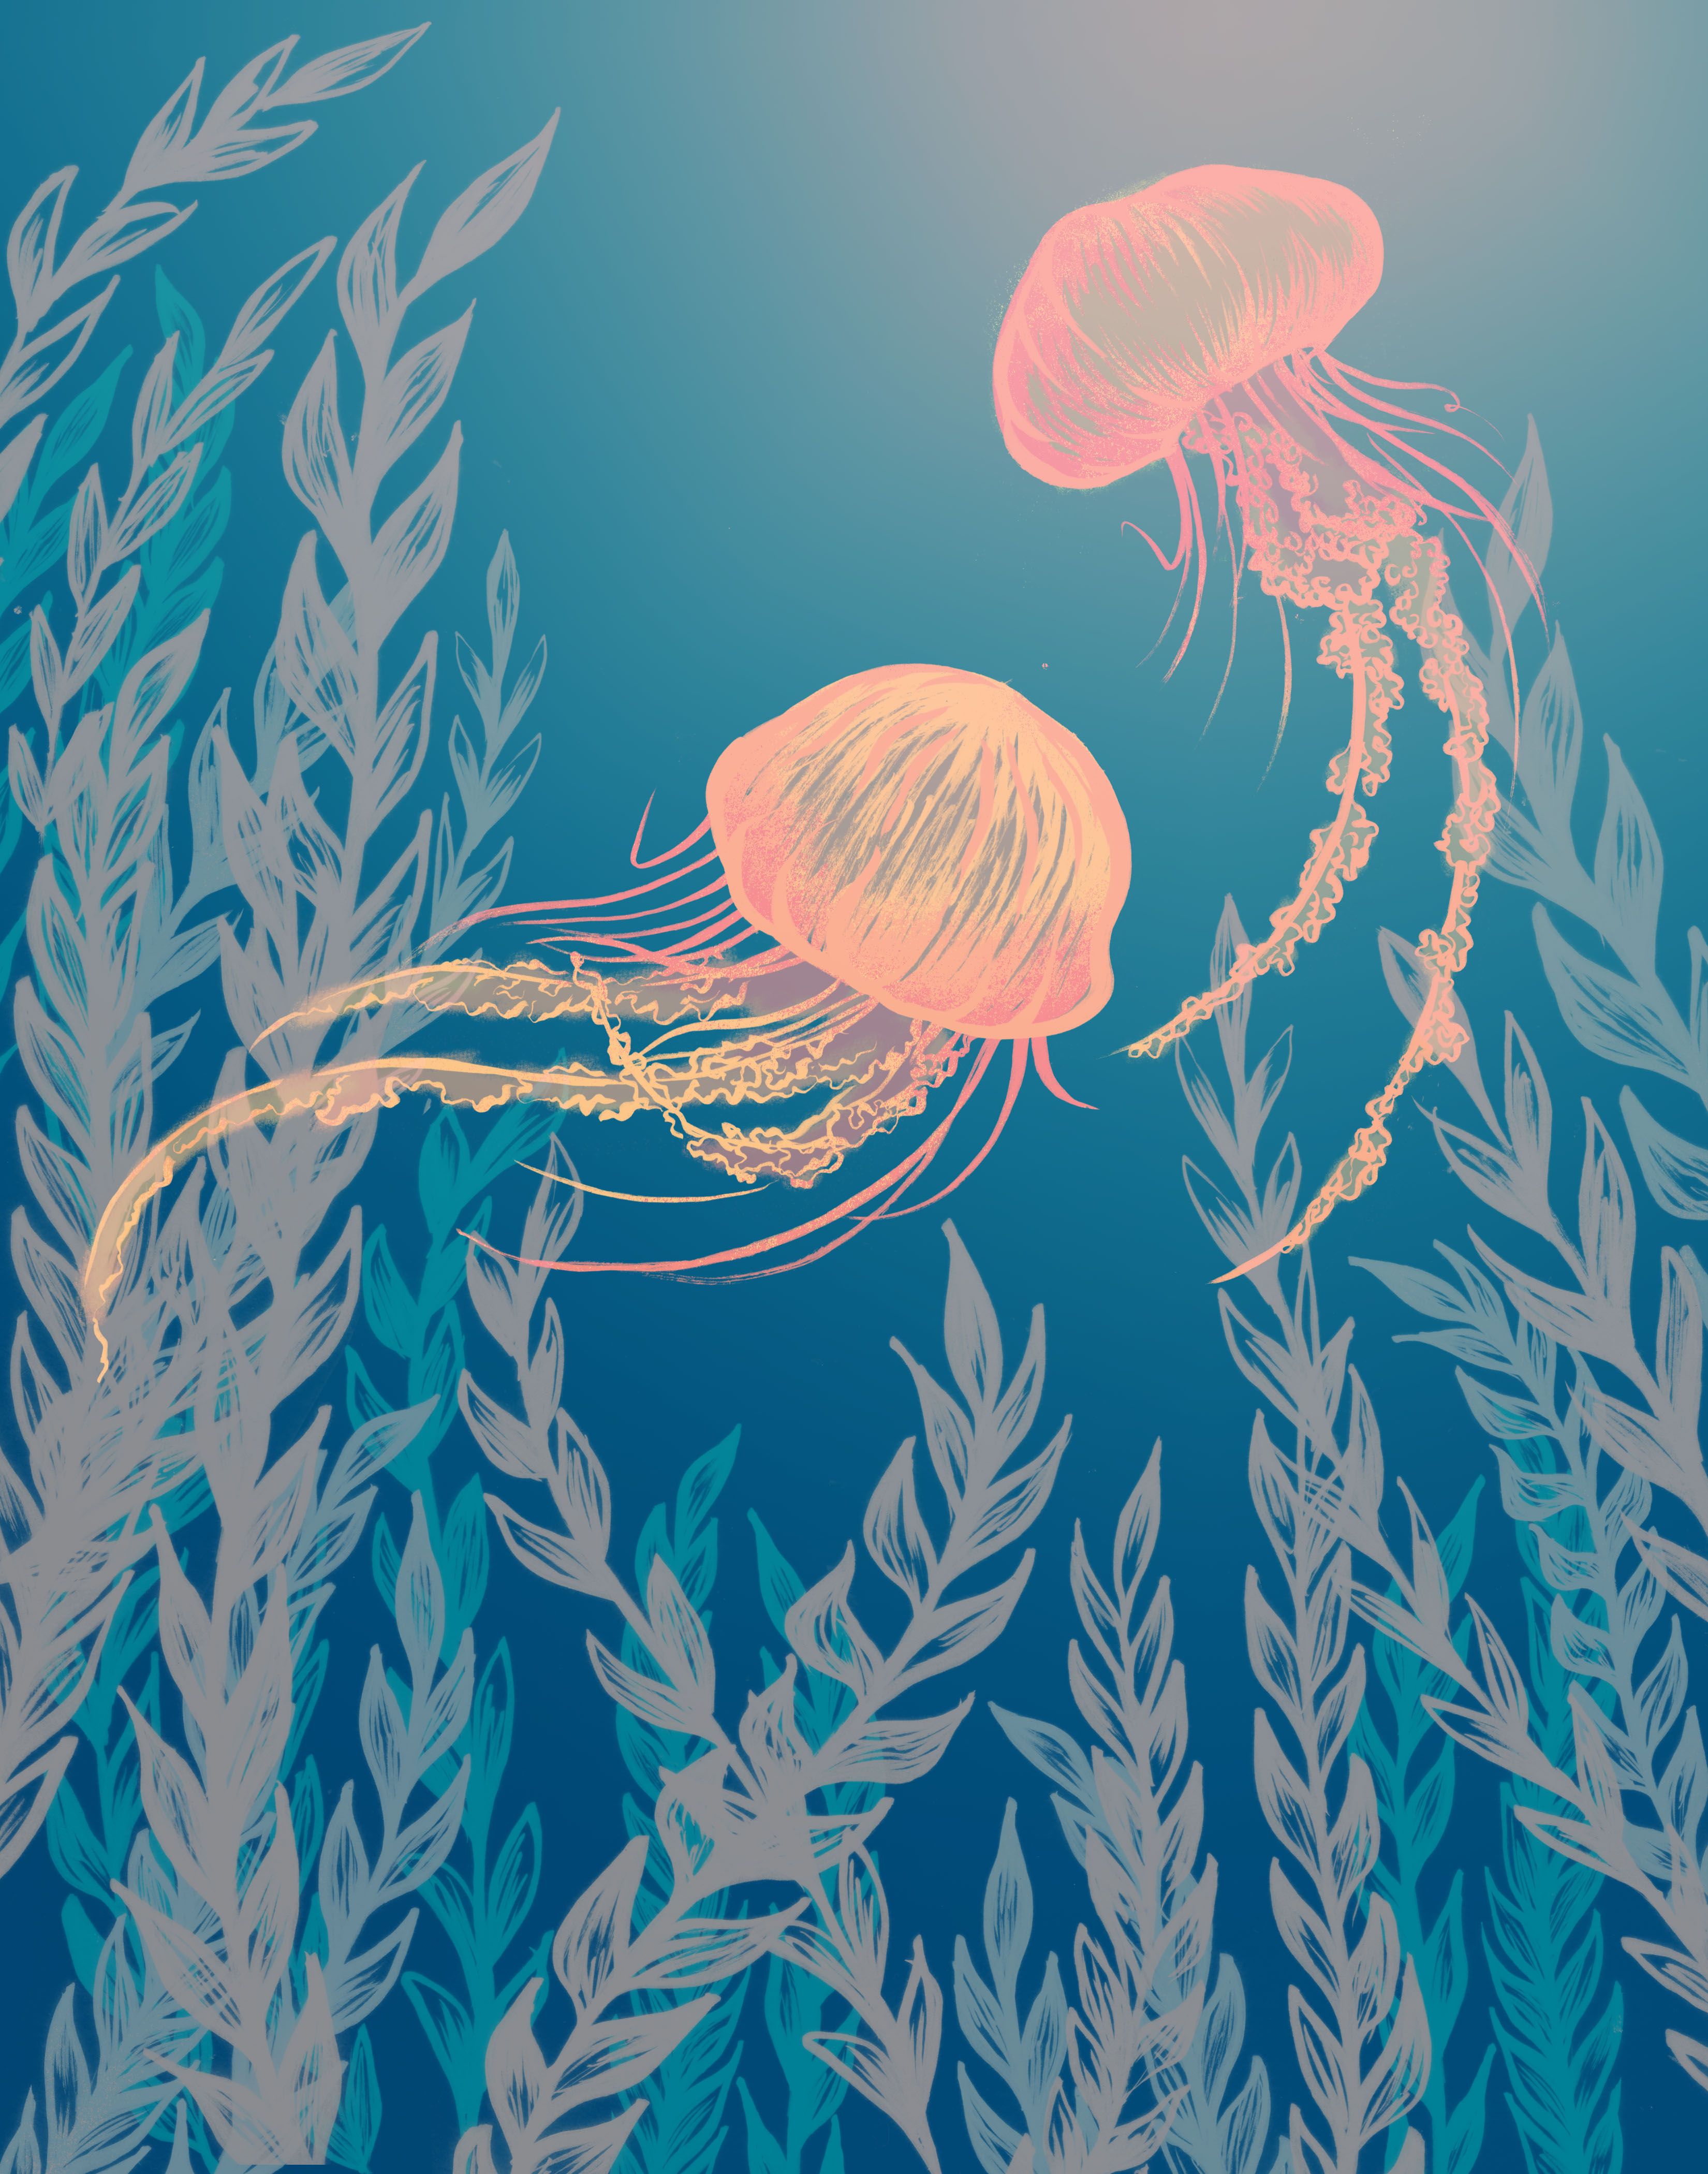 JRedmer Illustration » Jellyfish | settling down | Pinterest ...